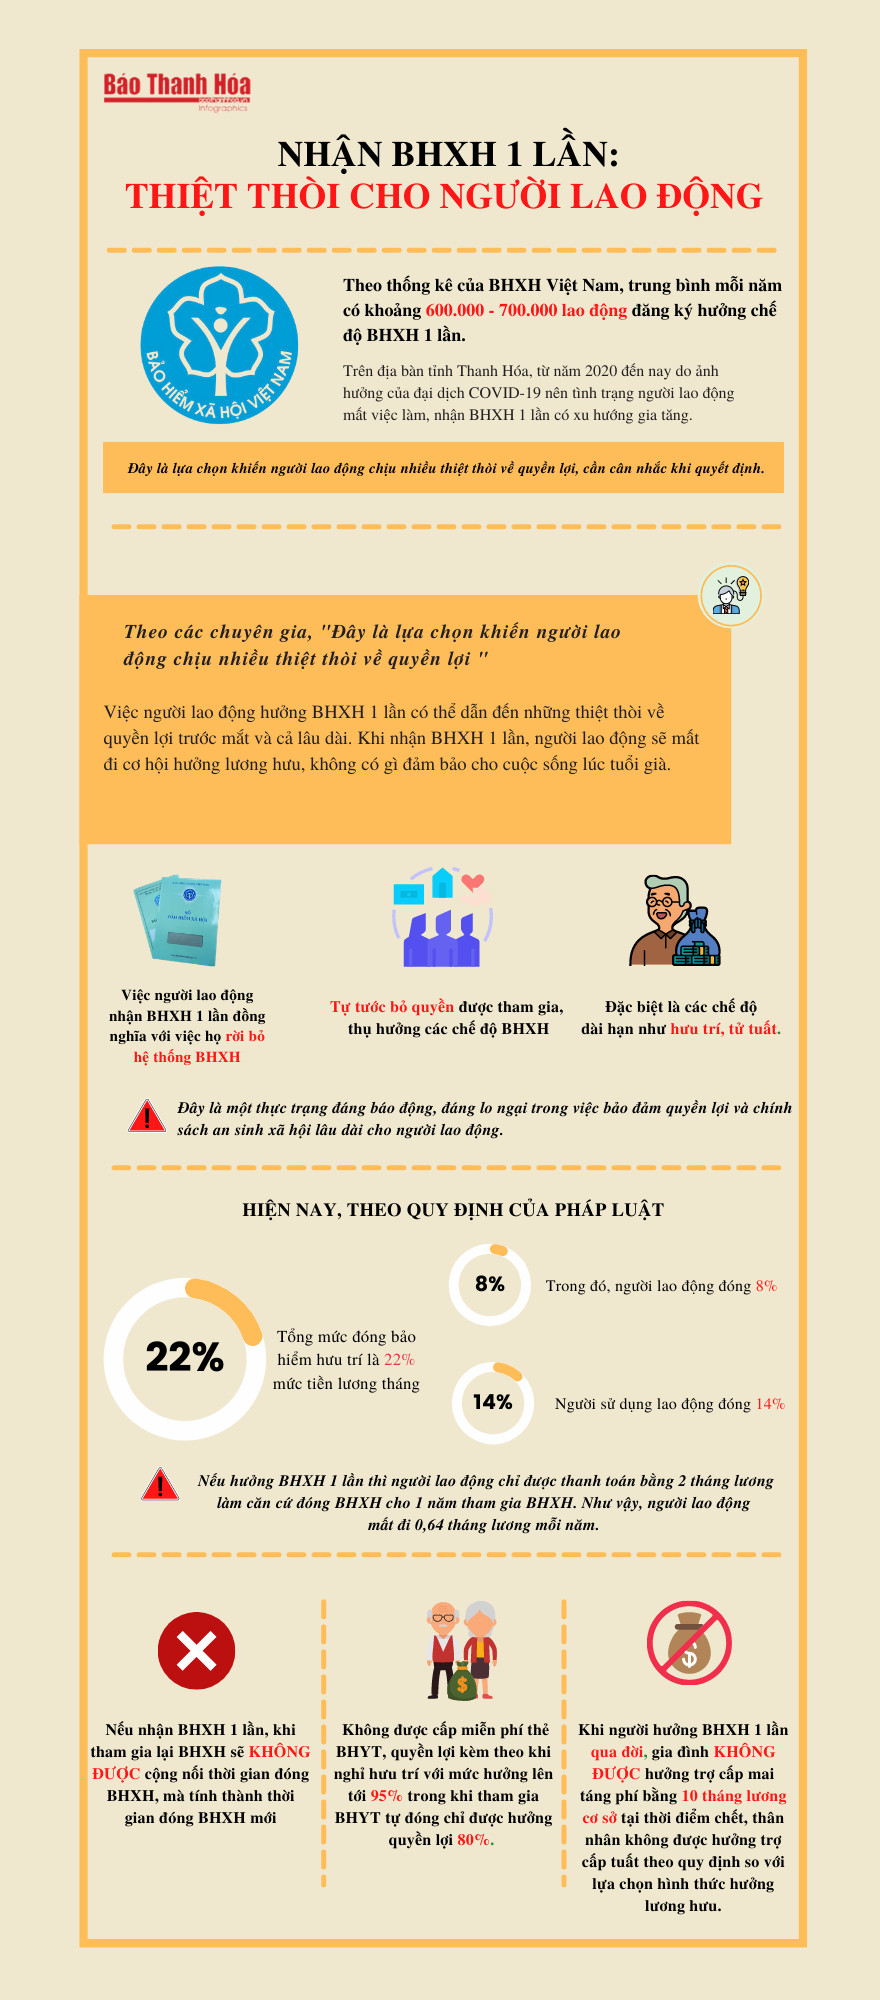 [Infographic] - Nhận BHXH 1 lần: Thiệt thòi cho người lao động